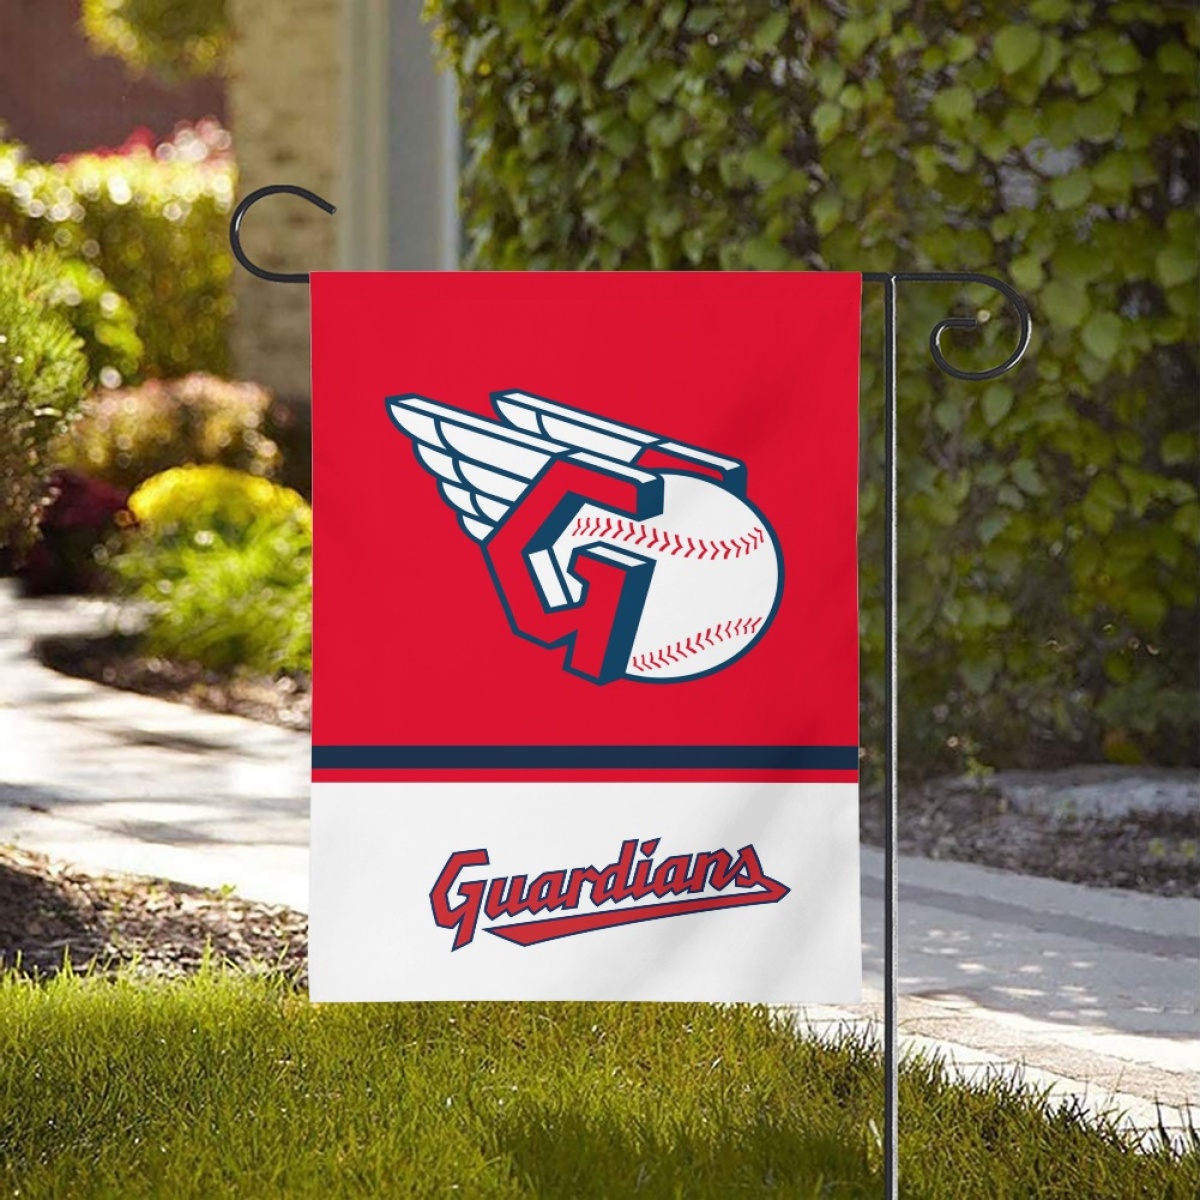 Cleveland Guardians Double-Sided Garden Flag 001 (Pls check description for details)